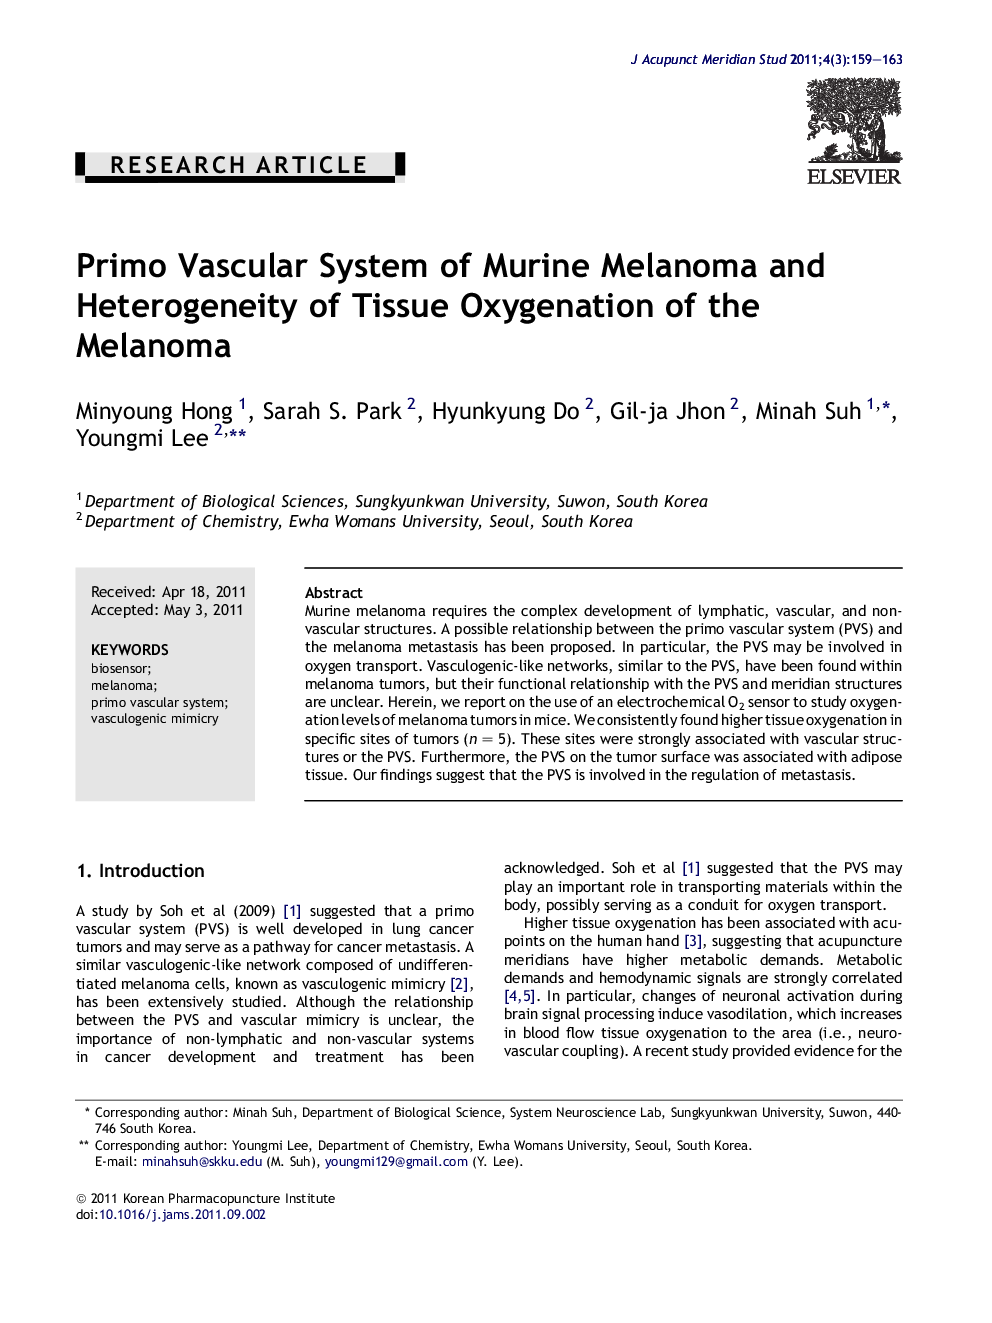 Primo Vascular System of Murine Melanoma and Heterogeneity of Tissue Oxygenation of the Melanoma